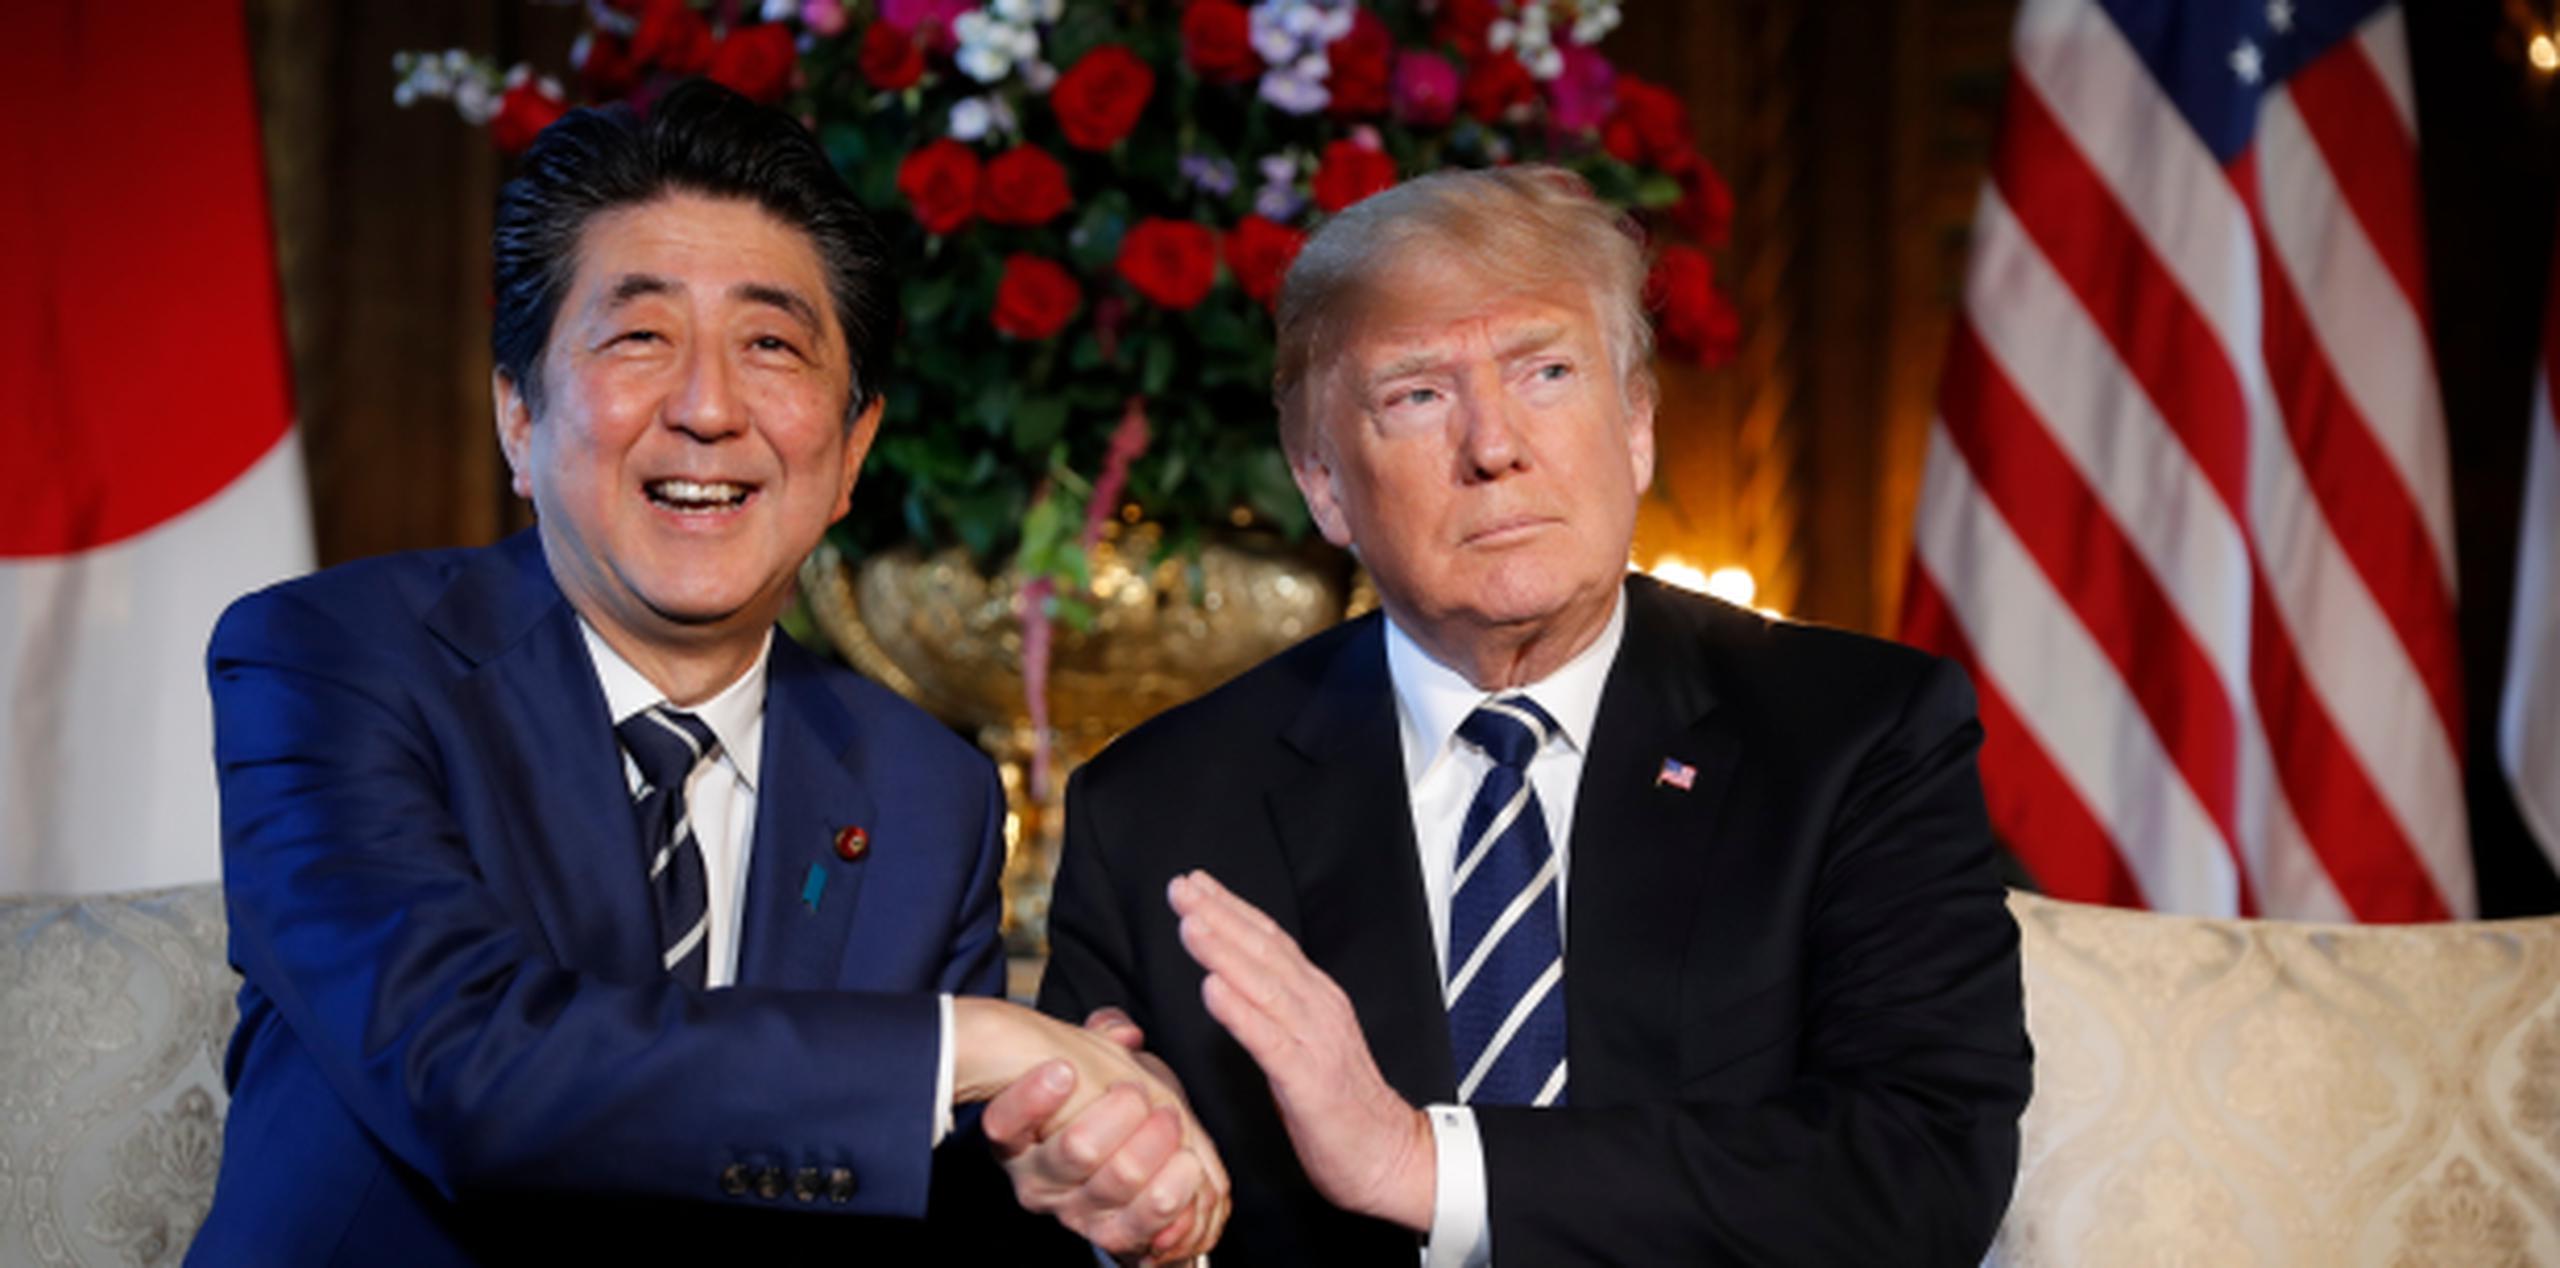 El presidente Donald Trump y el primer ministro japonés Shinzo Abe conversaron hoy durante una reunión en el club del mandatario estadounidense Mar-a-Lago en Palm Beach, Florida (AP / Pablo Martínez Monsivais)